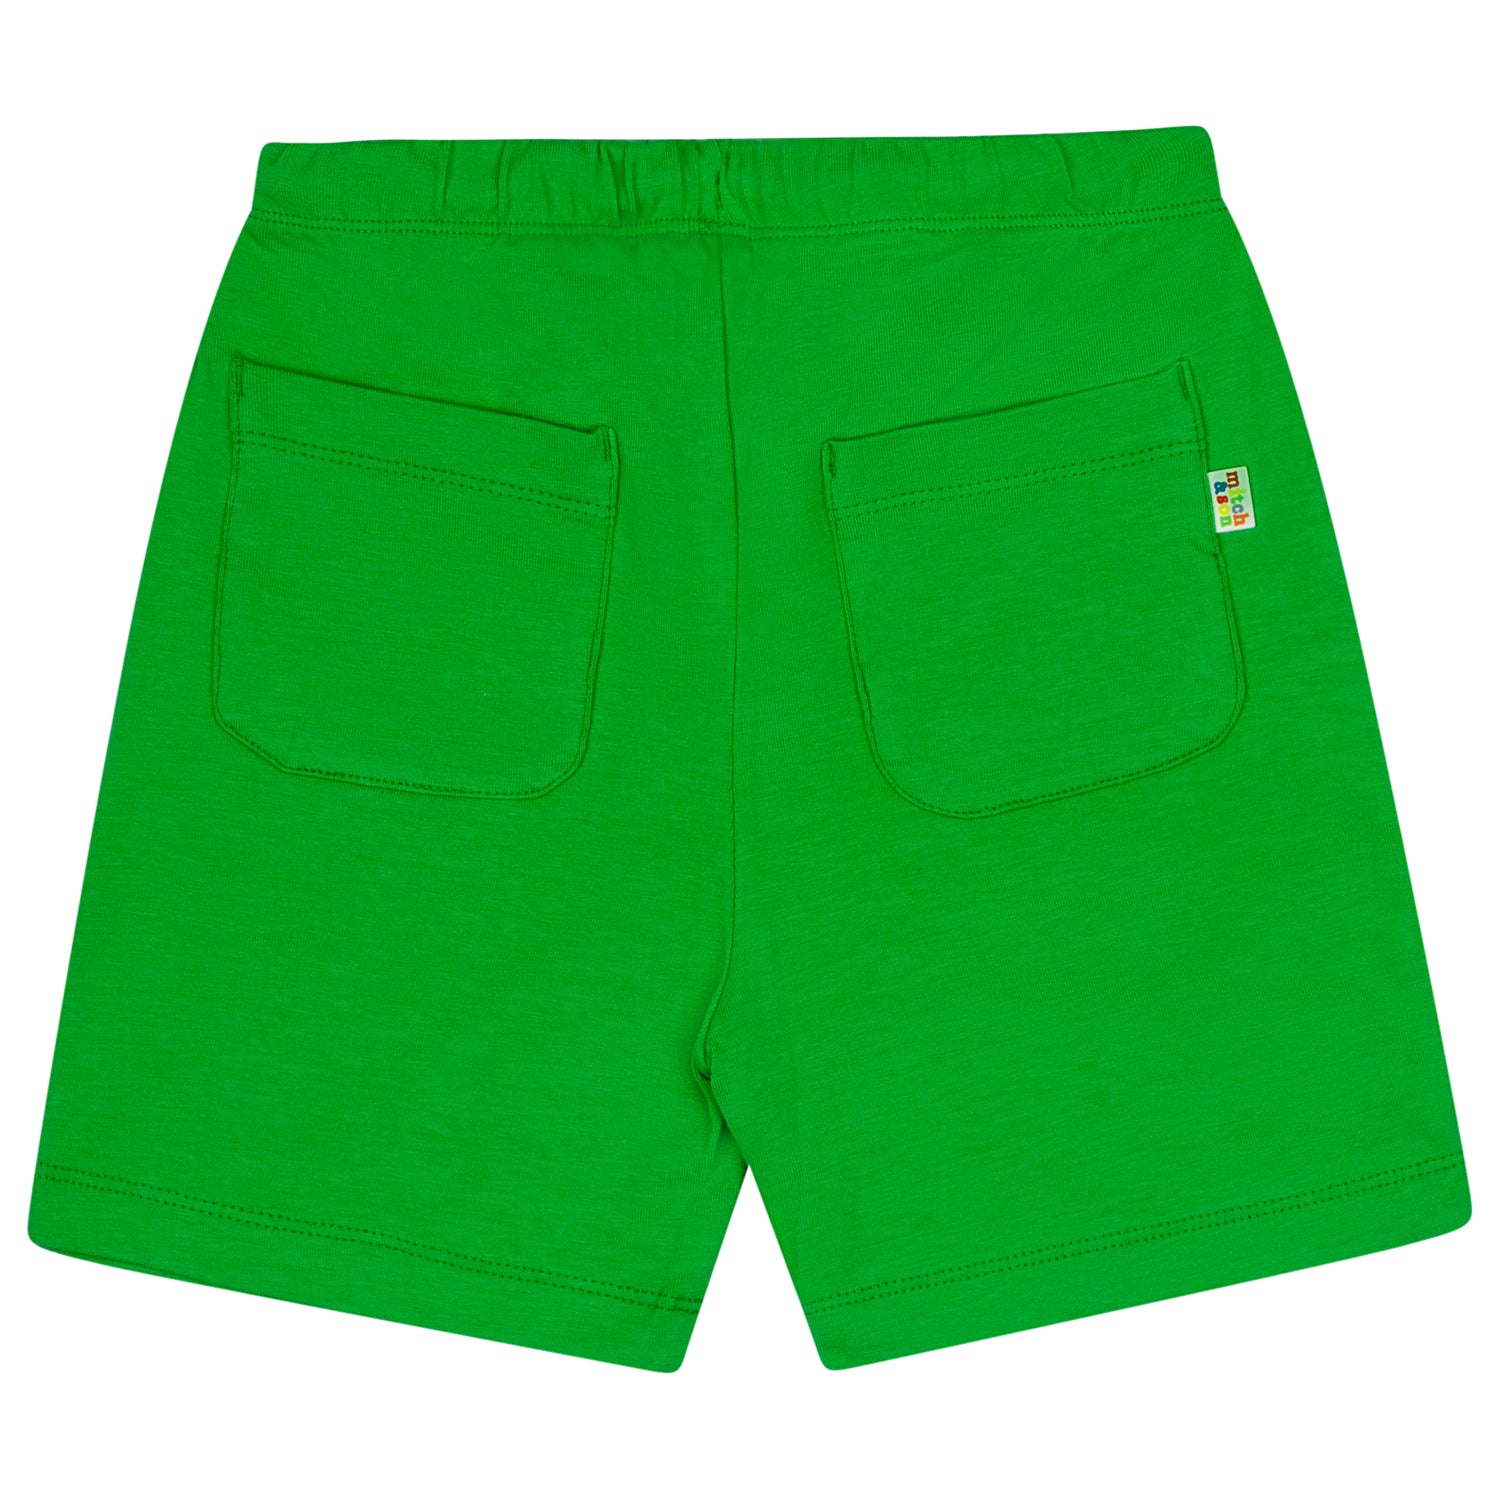 Green Jersey Set